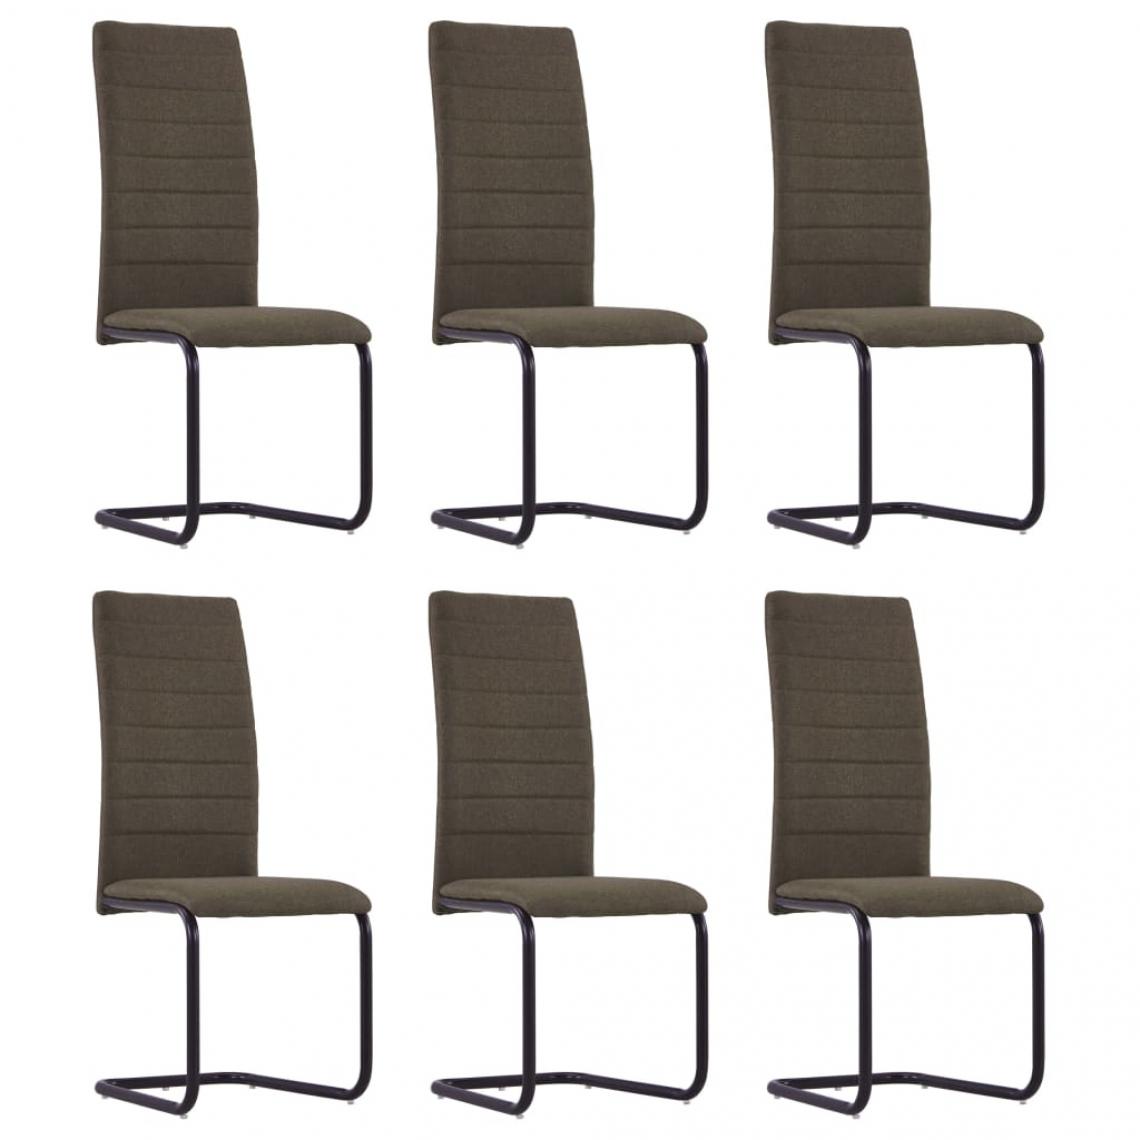 Decoshop26 - Lot de 6 chaises de salle à manger cuisine cantilever design moderne tissu marron CDS022311 - Chaises